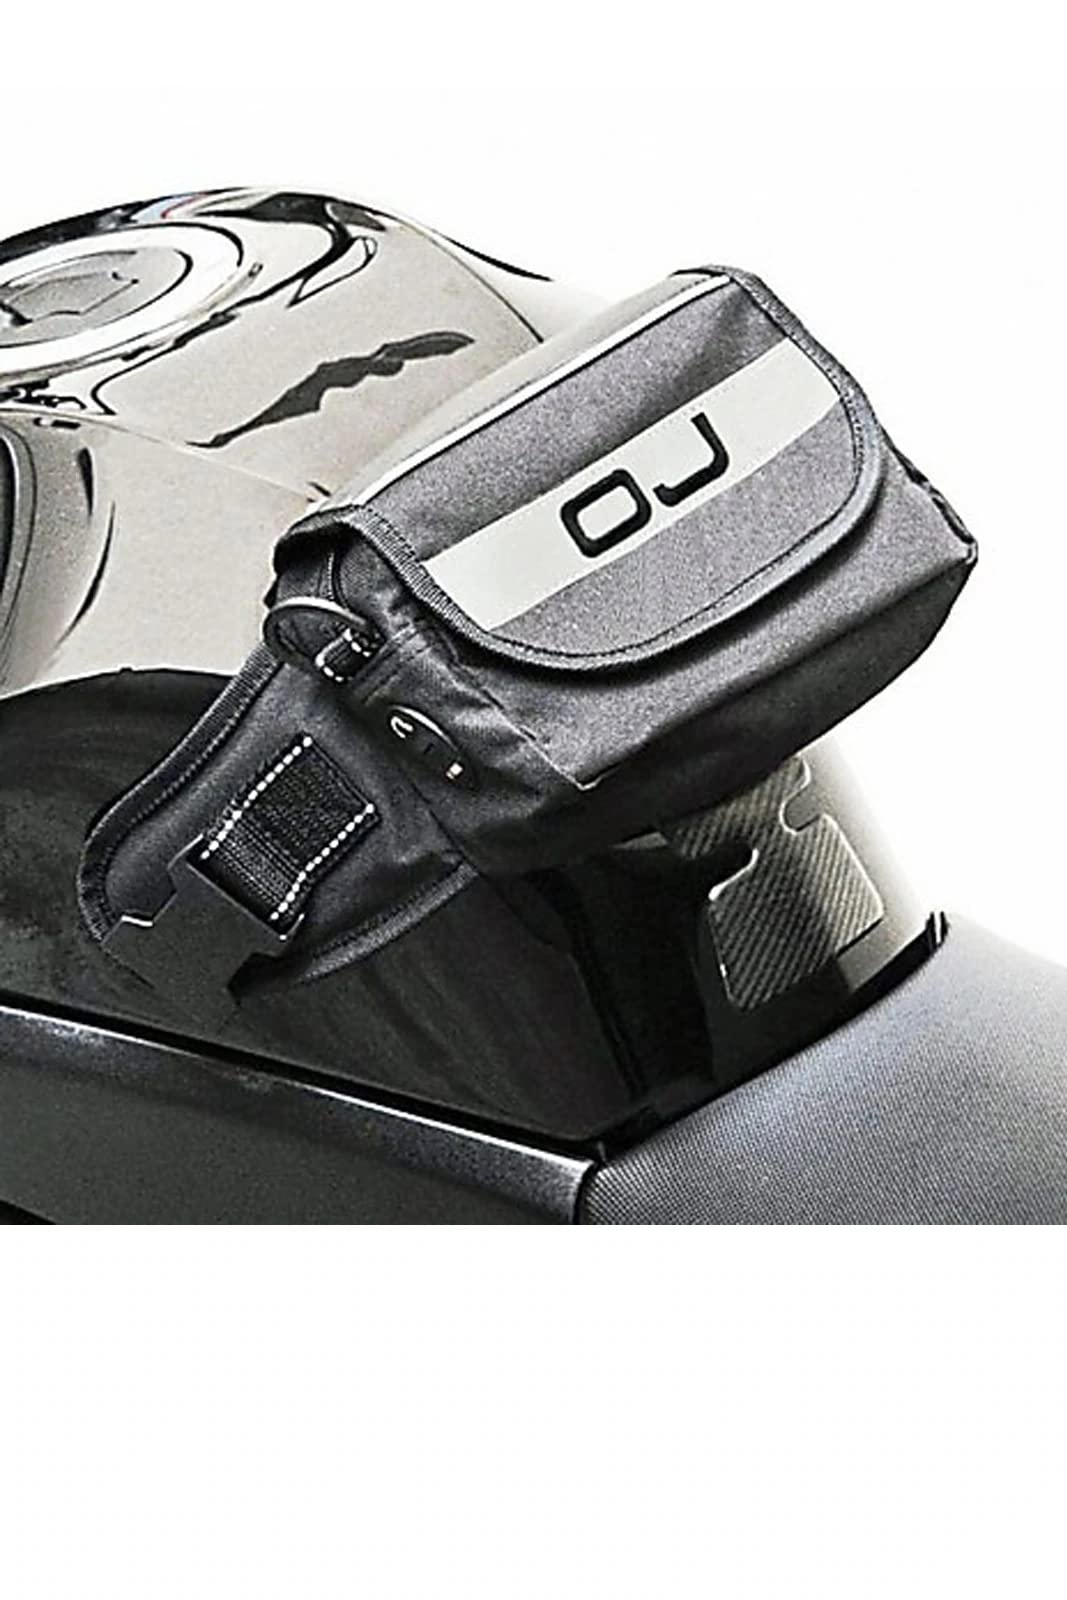 JO OJ JM0550 Polyester-Tasche oder Tankrucksack mit Magneten Befestigungen von OJ